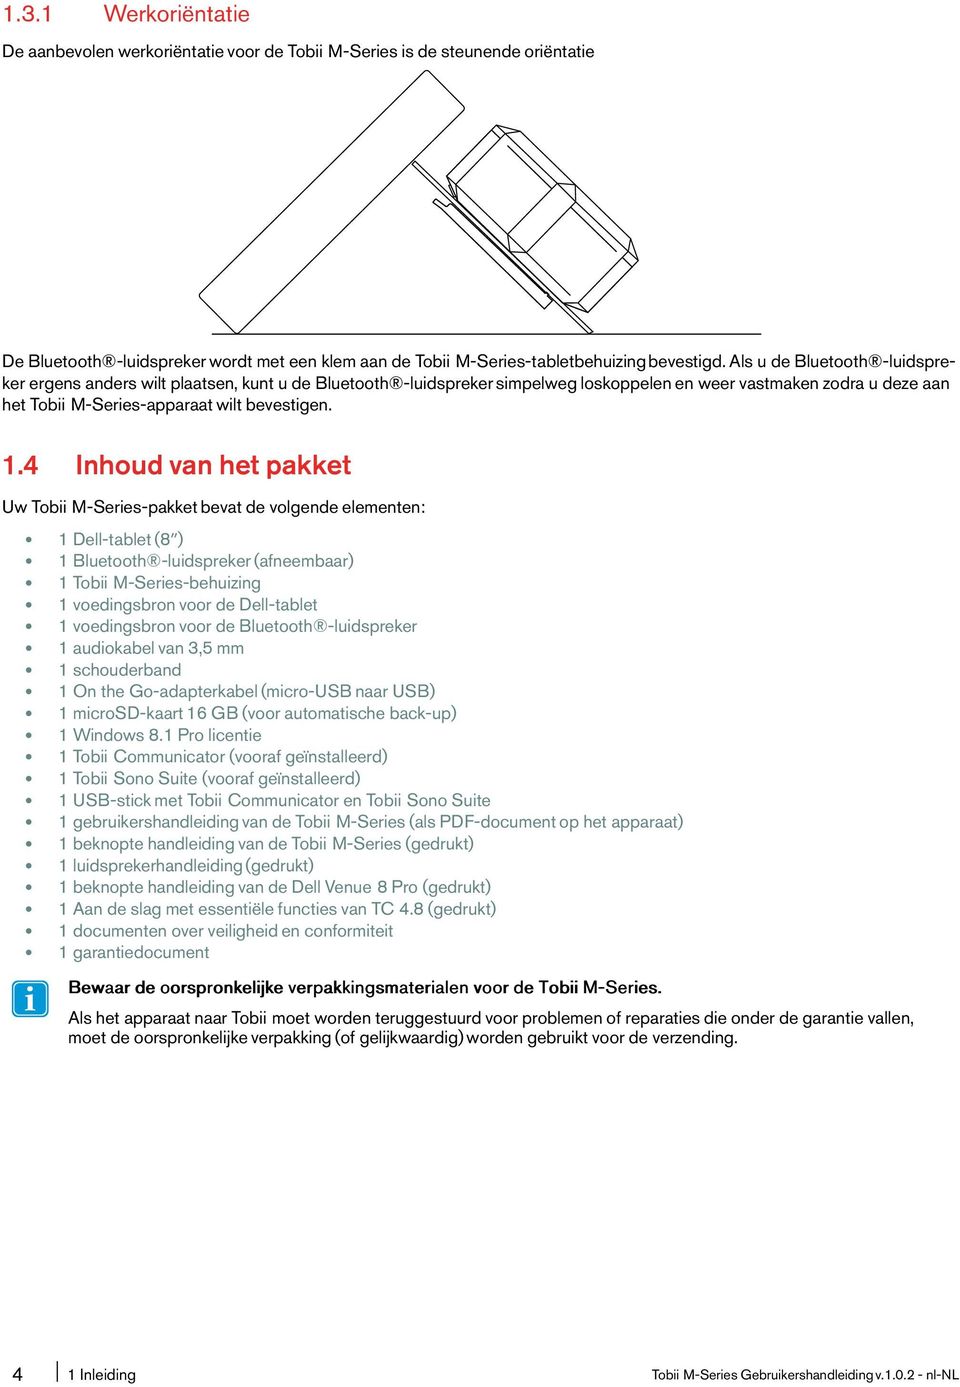 4 Inhoud van het pakket Uw Tobii M-Series-pakket bevat de volgende elementen: 1 Dell-tablet(8ʺ) 1 Bluetooth -luidspreker(afneembaar) 1 Tobii M-Series-behuizing 1 voedingsbron voor de Dell-tablet 1